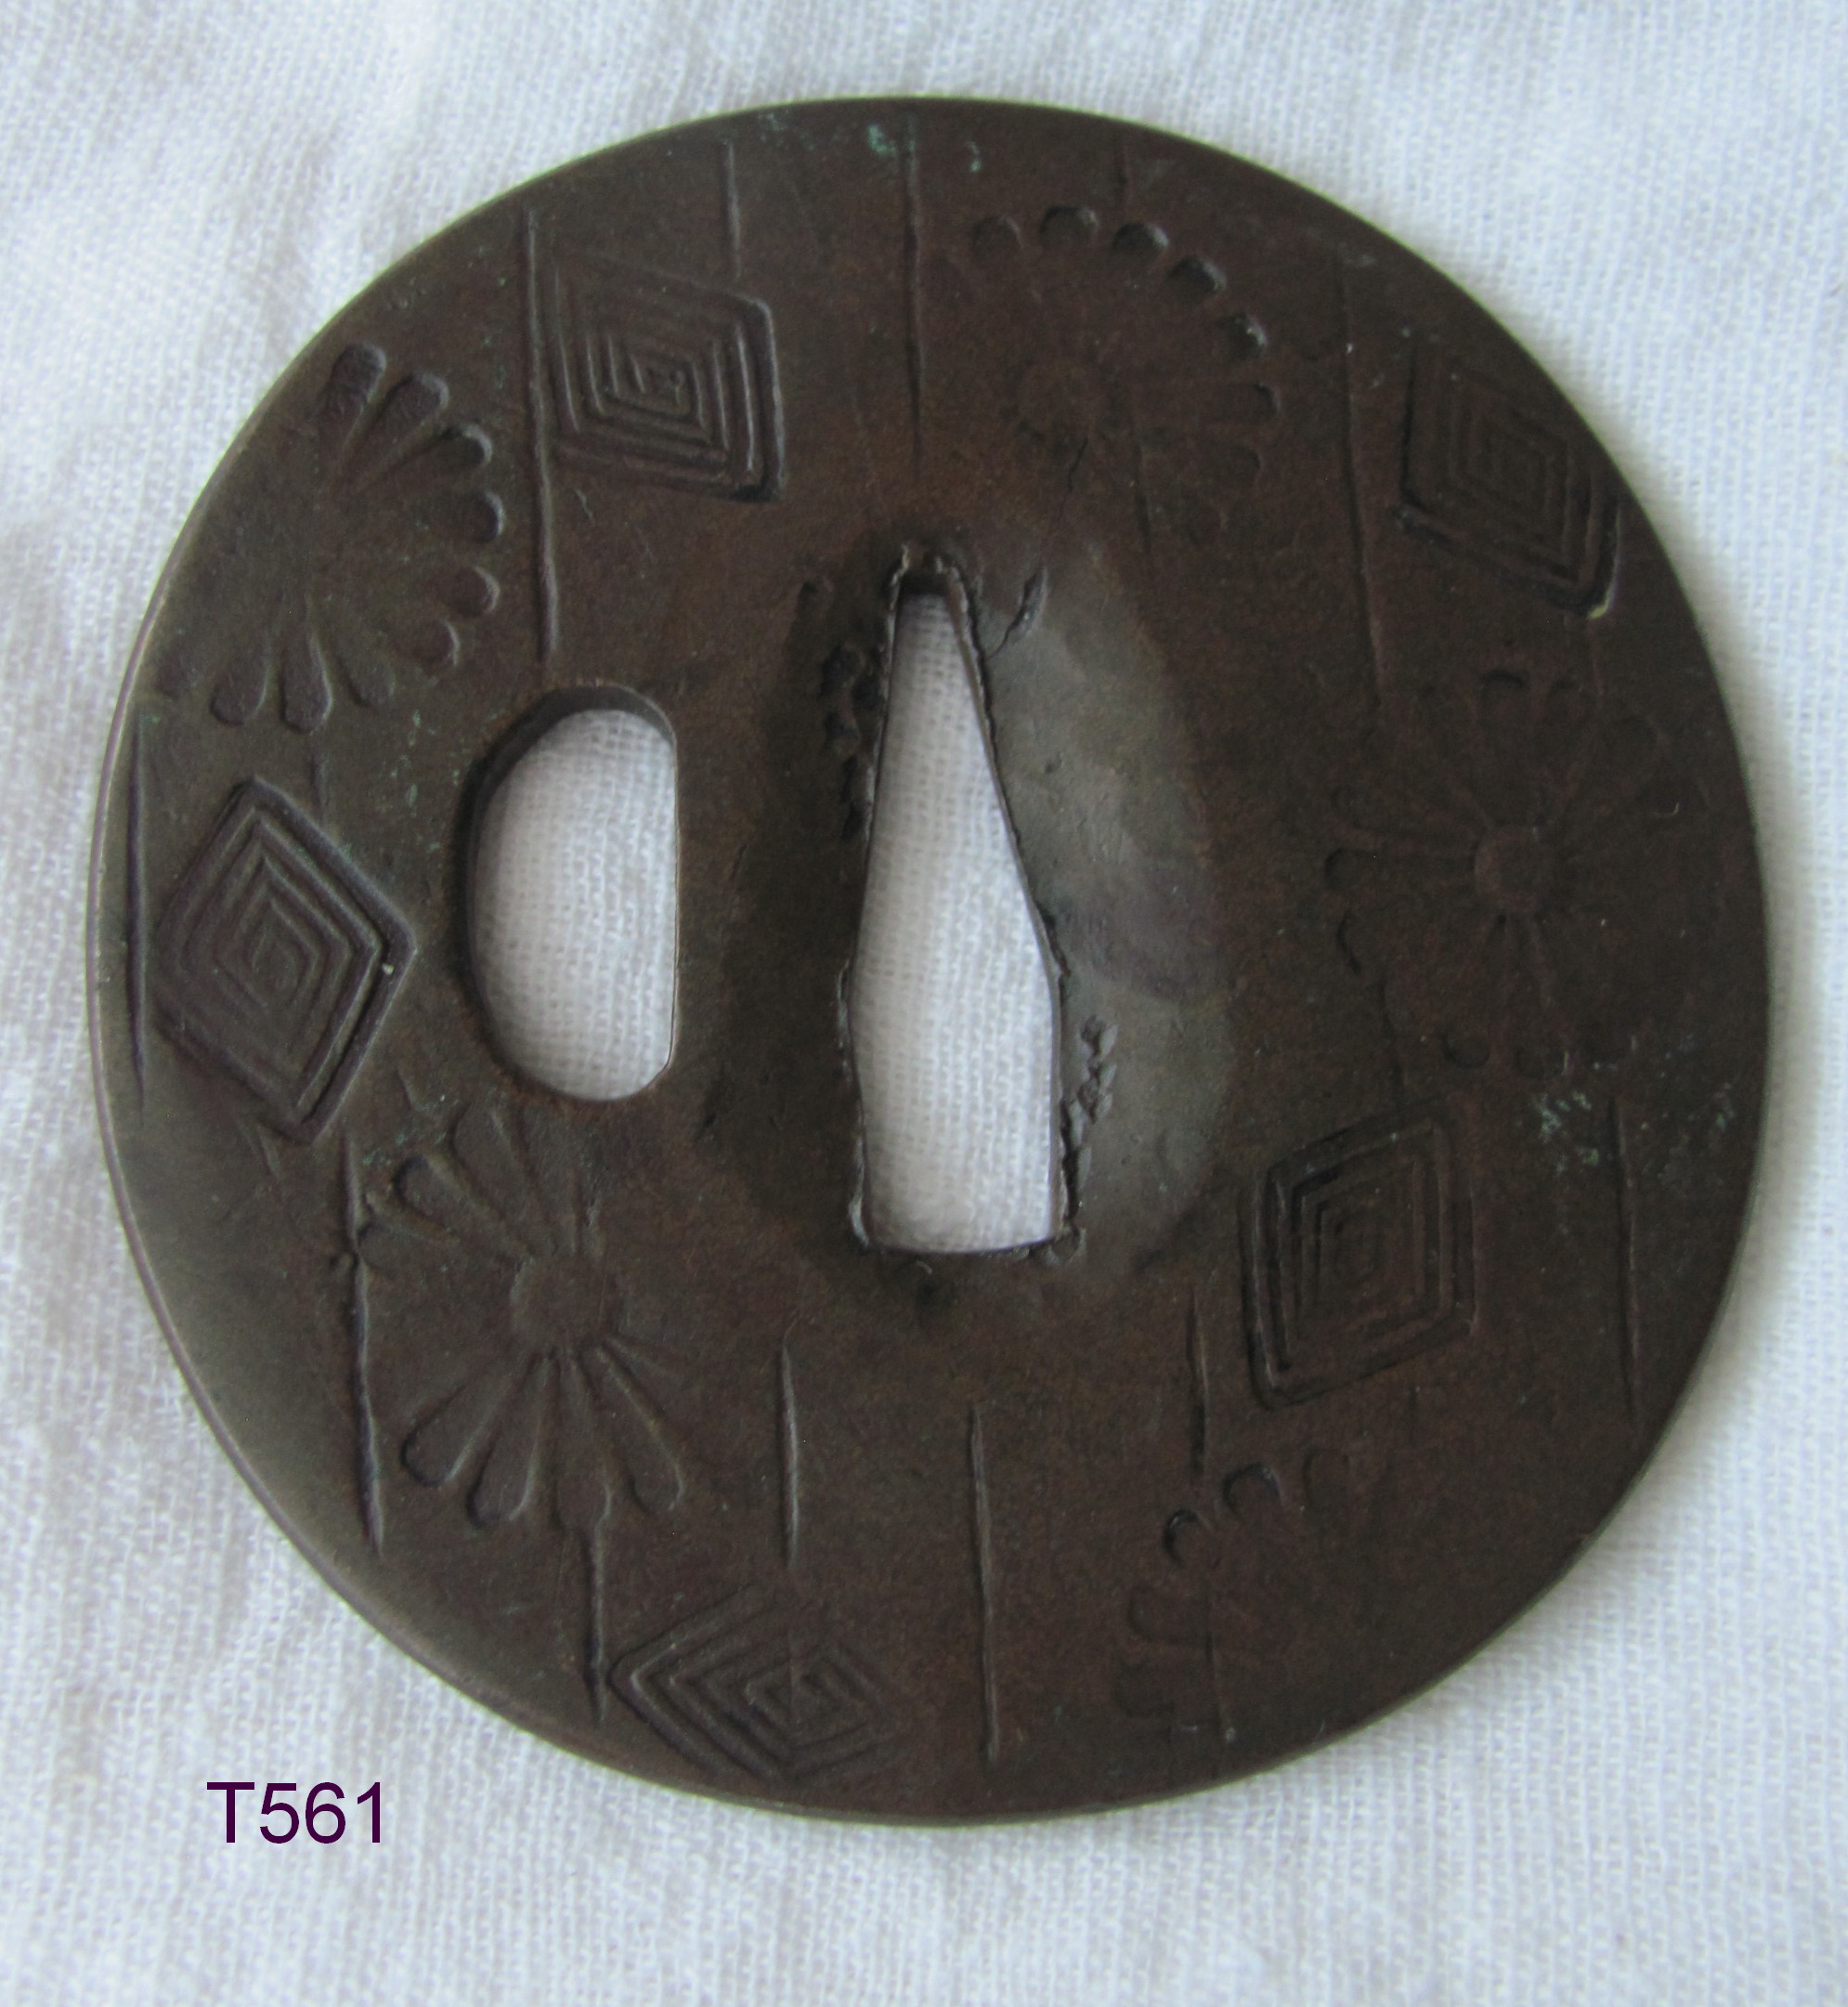 T561. Stamped Yamagane Tsuba